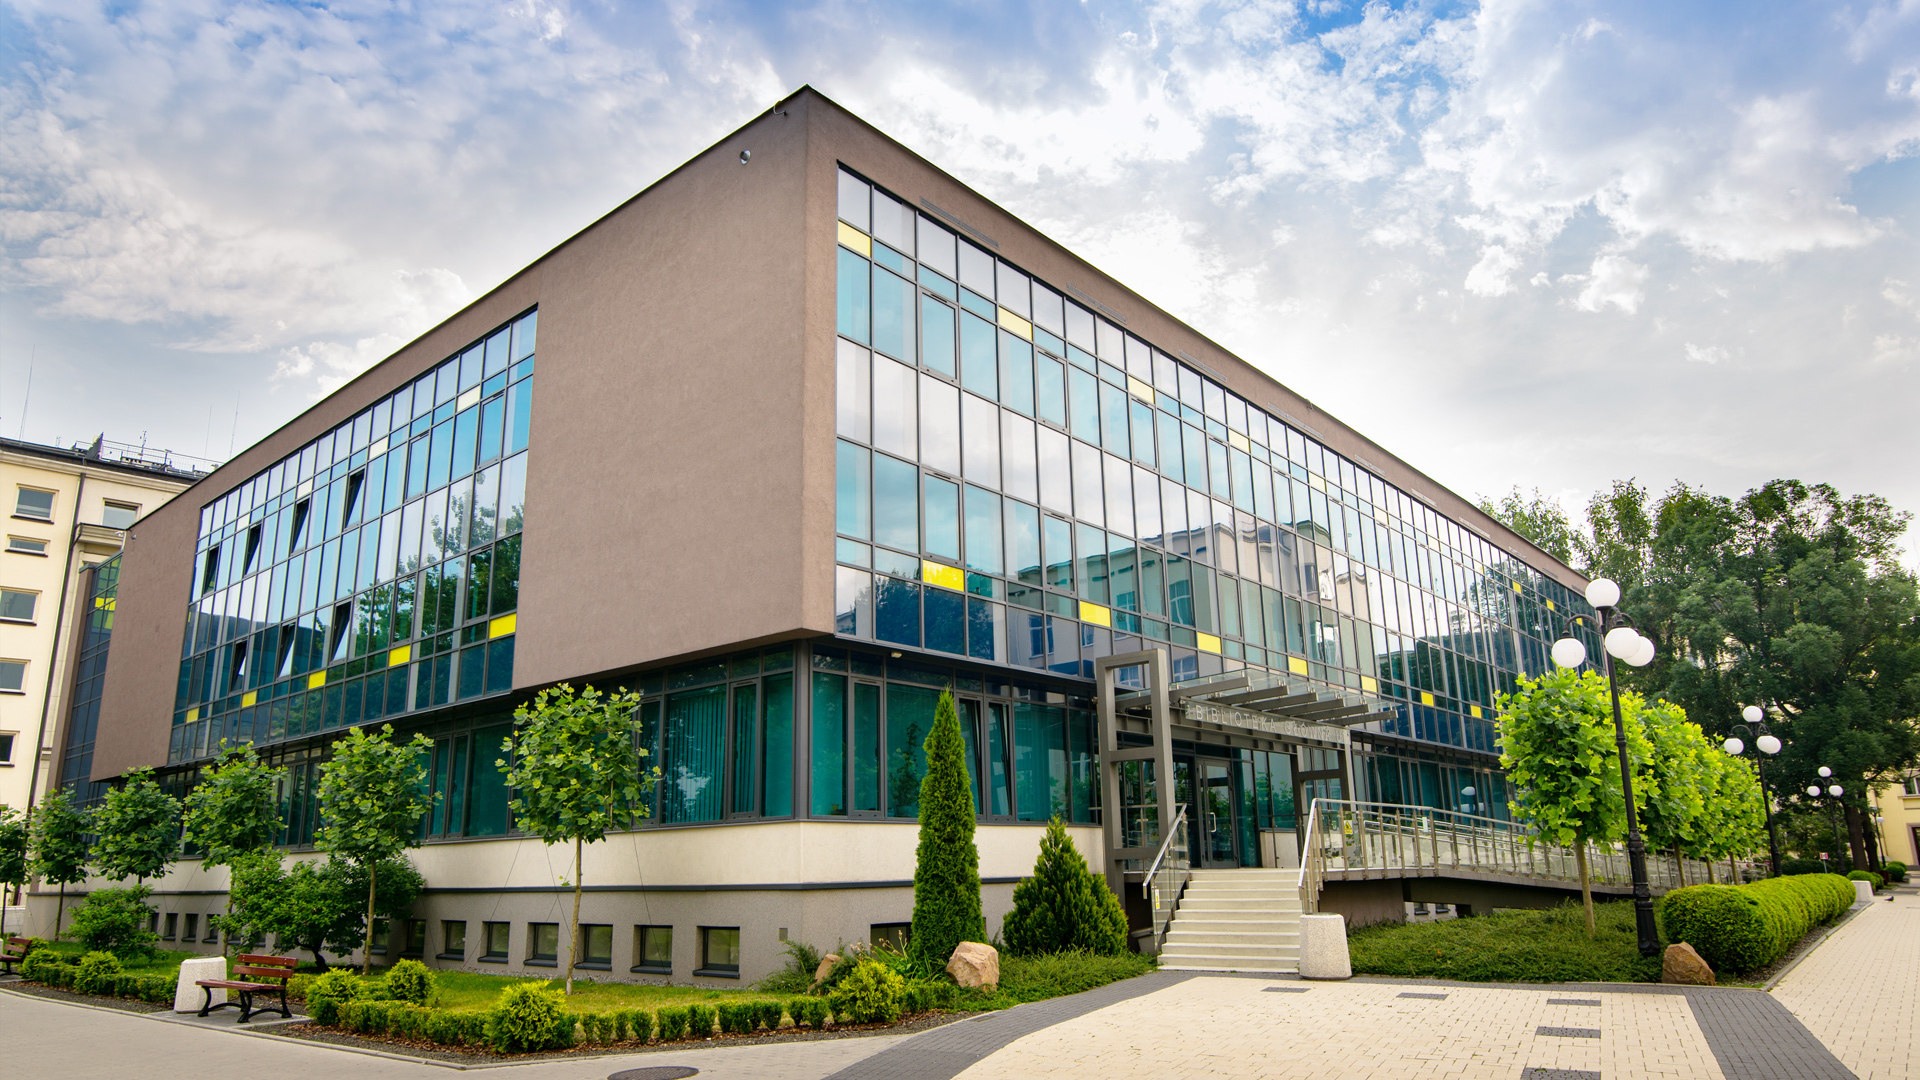 Zdjęcie dwukondygnacyjnego nowoczesnego budynku. W elewacjach dominują turkusowe odcienie okien z kontrastującymi żółtymi elementami. Elementy murowane są popielate. Dookoła budynku sporo zieleni.